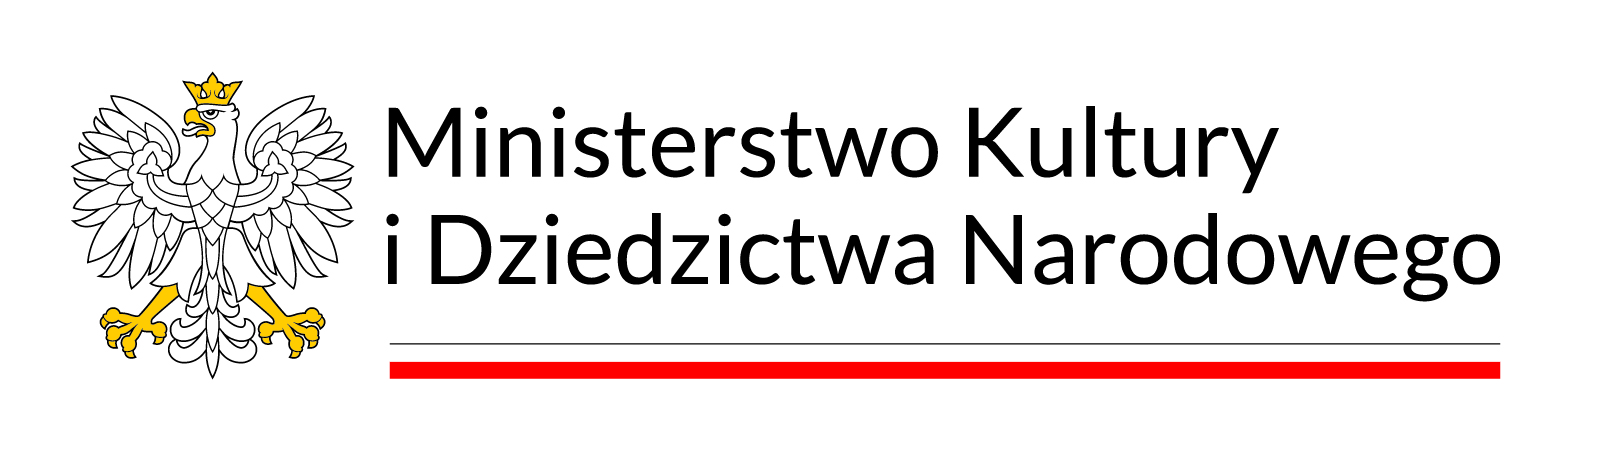 Logo Mnisterstwa Kultury